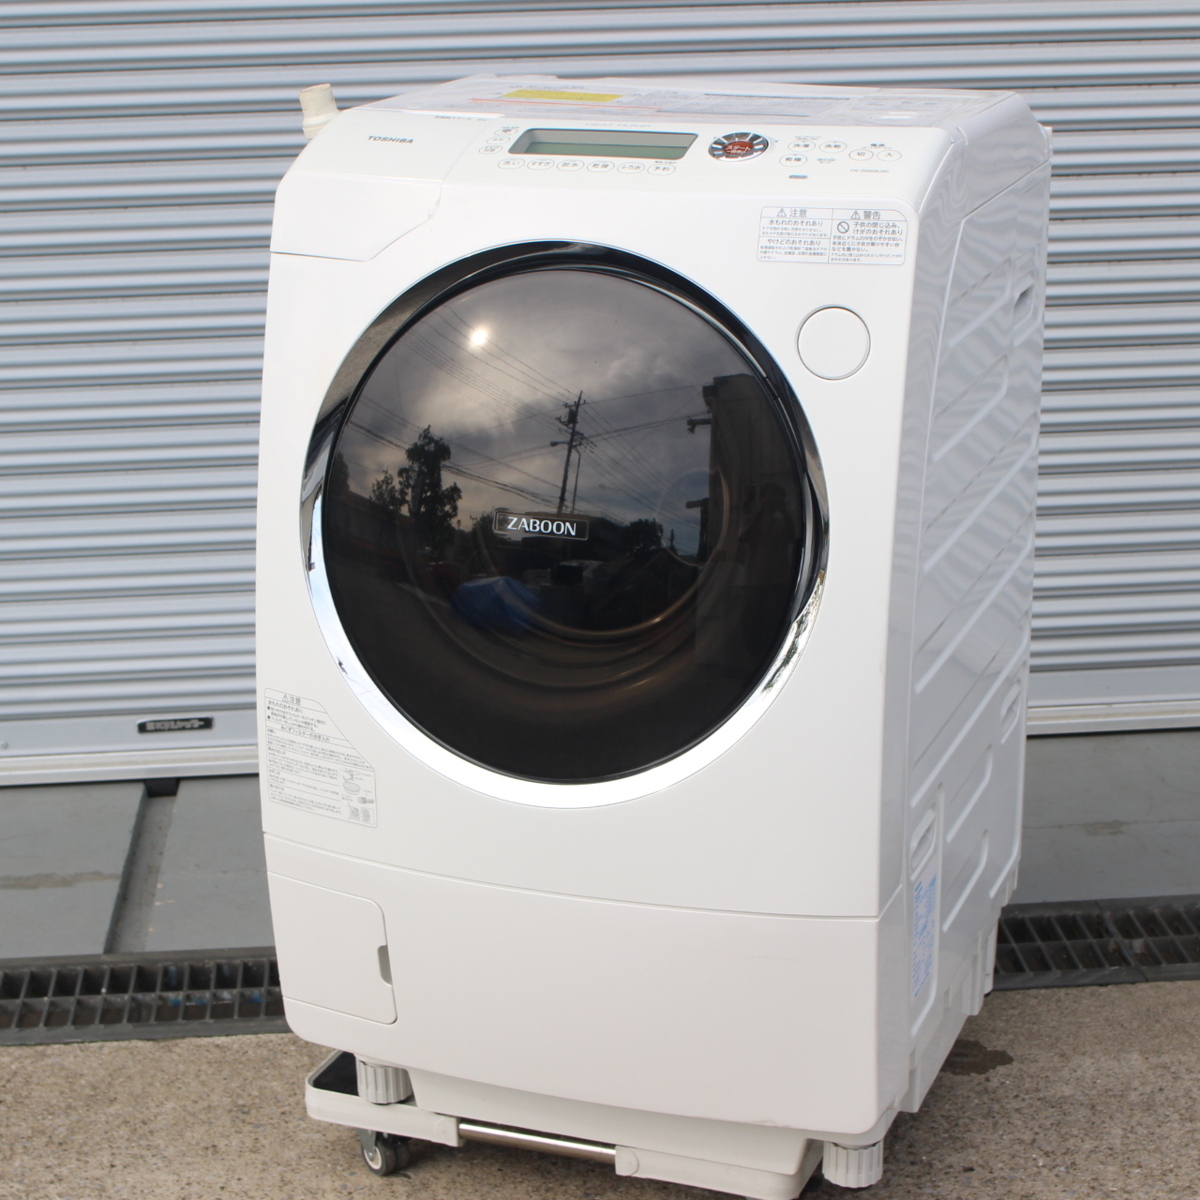 TOSHIBA ドラム型洗濯機 TW-Z9500L 9kg ヒートポンプ 東芝 2013年製